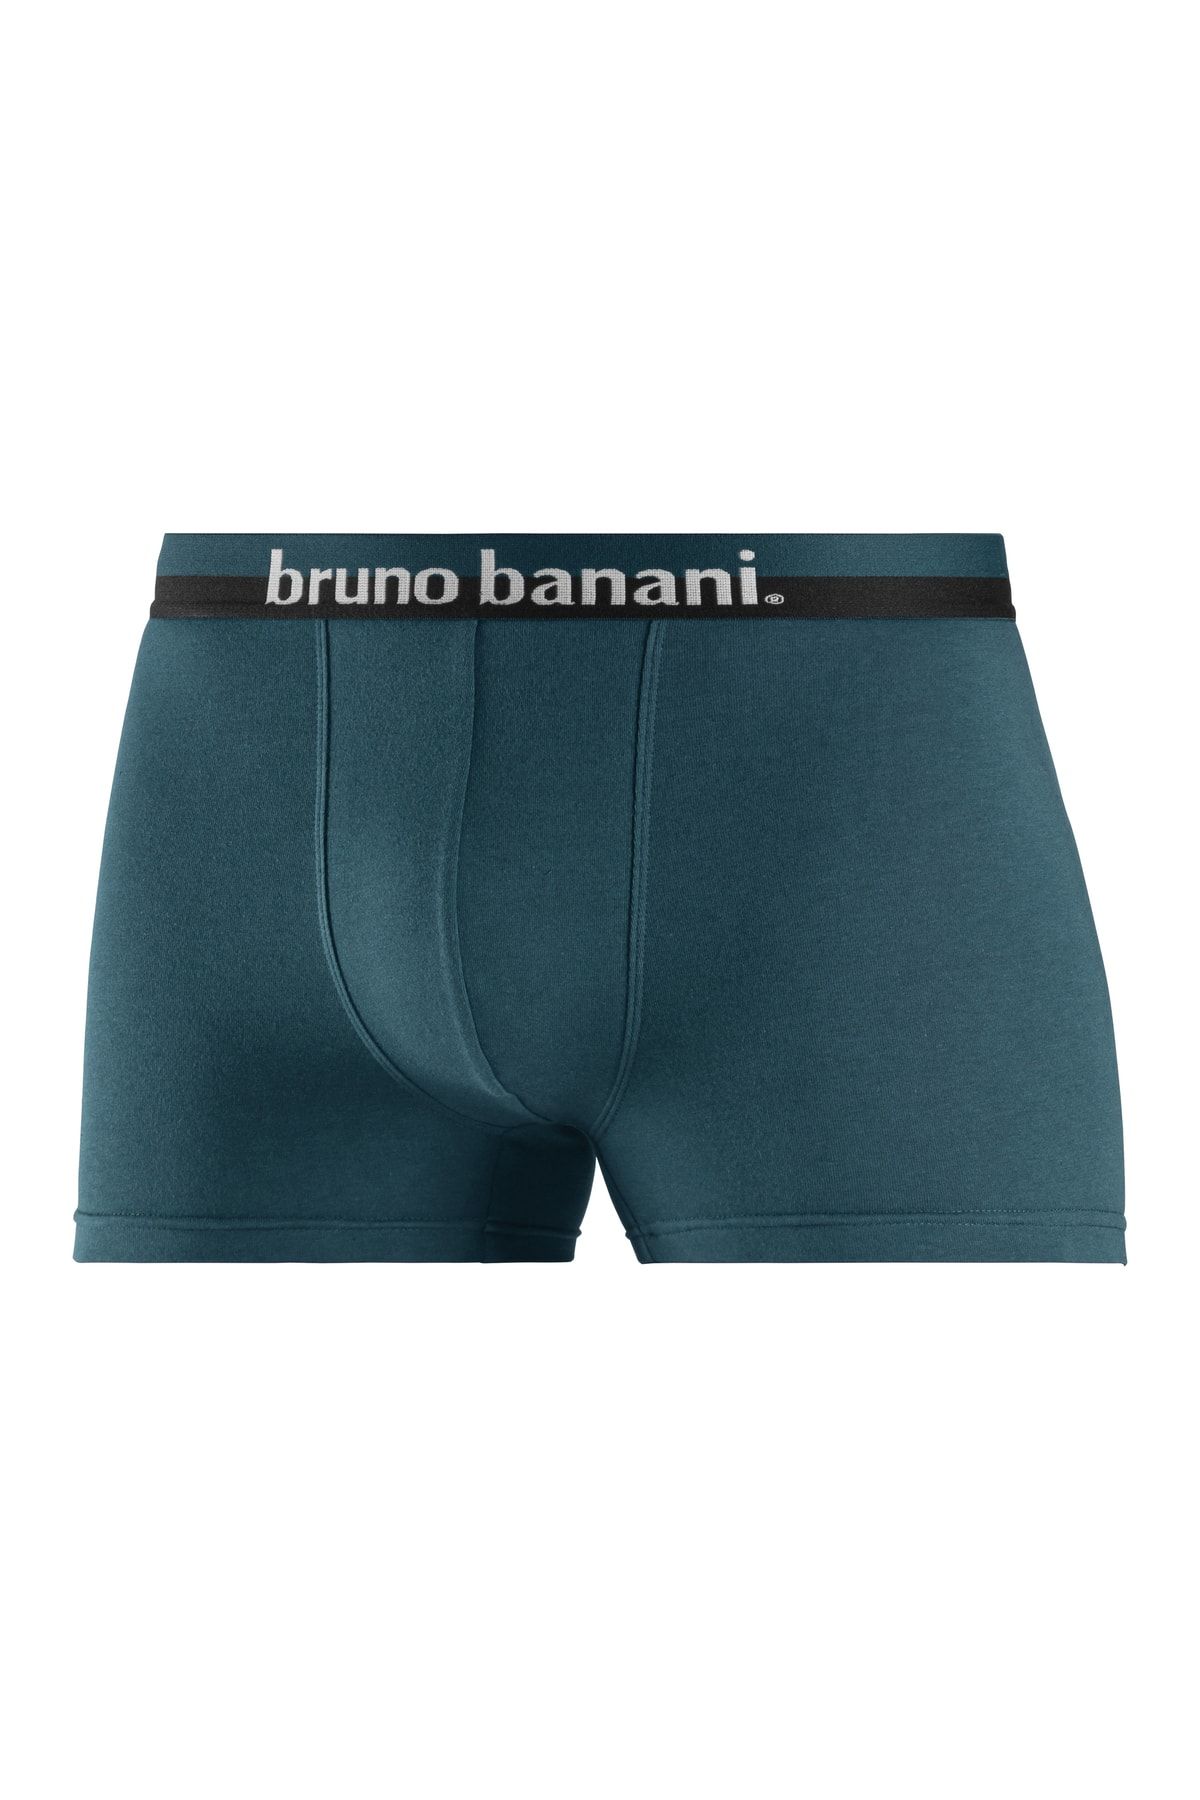 Bruno Banani Boxershorts Blau - Trendyol - - Unifarben